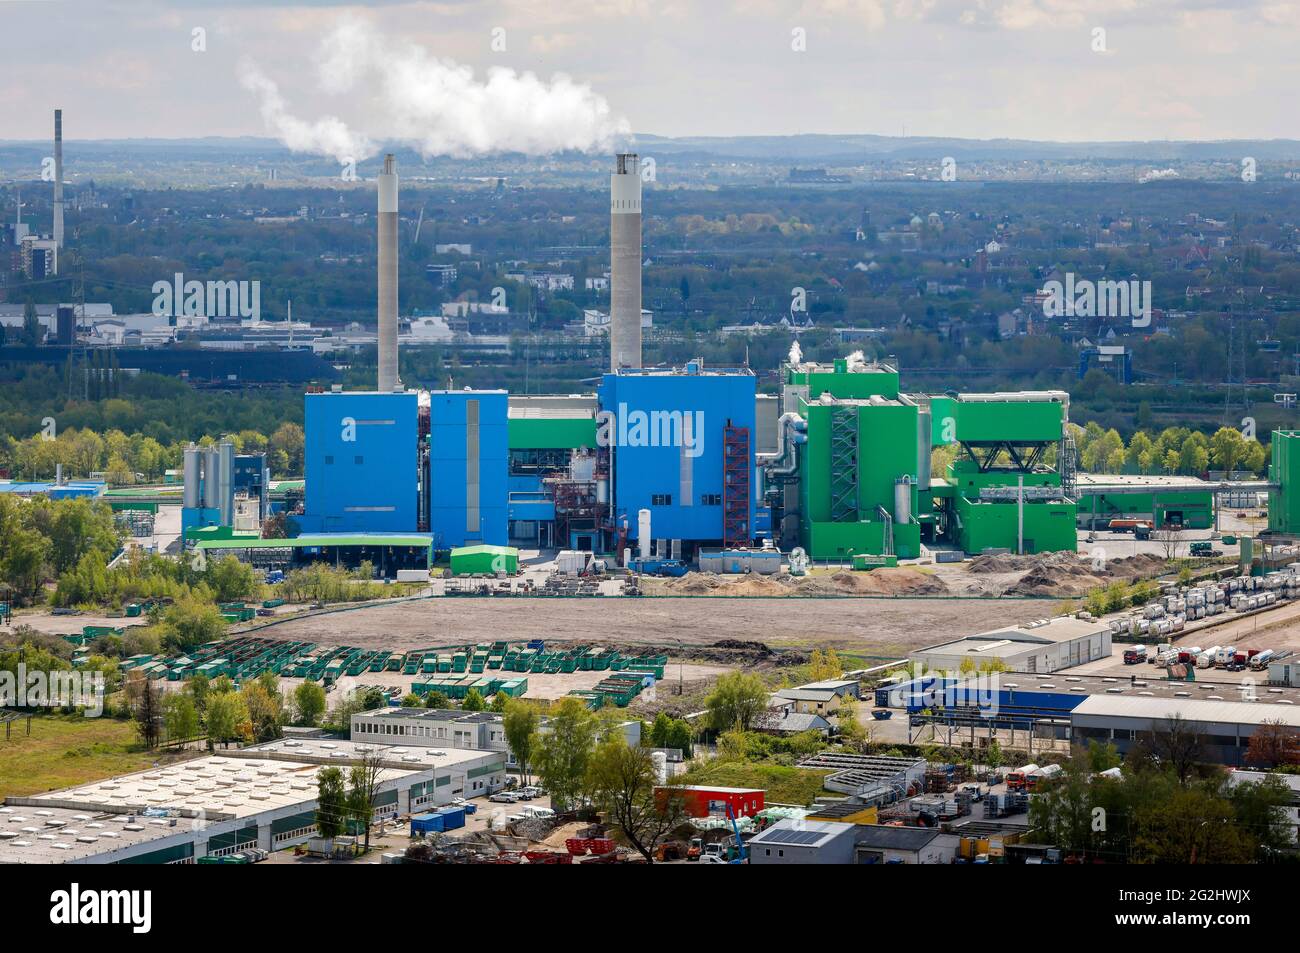 Herten, Ruhrgebiet, Nordrhein-Westfalen, Deutschland - Abfallkraftwerk AGR-RZR Herten, das Entsorgungsunternehmen Ruhrgebiet (AGR) betreibt an einem Standort eine Müllverbrennungsanlage für kommunale und gewerbliche Abfälle sowie für gefährliche Abfälle RZR jährlich werden 400,000 Kilo "grünen" klimaschonenden Wasserstoff erzeugt, Die vor Ort an einer öffentlichen Tankstelle für Pkw und Lkw zur Verfügung stehen. Stockfoto